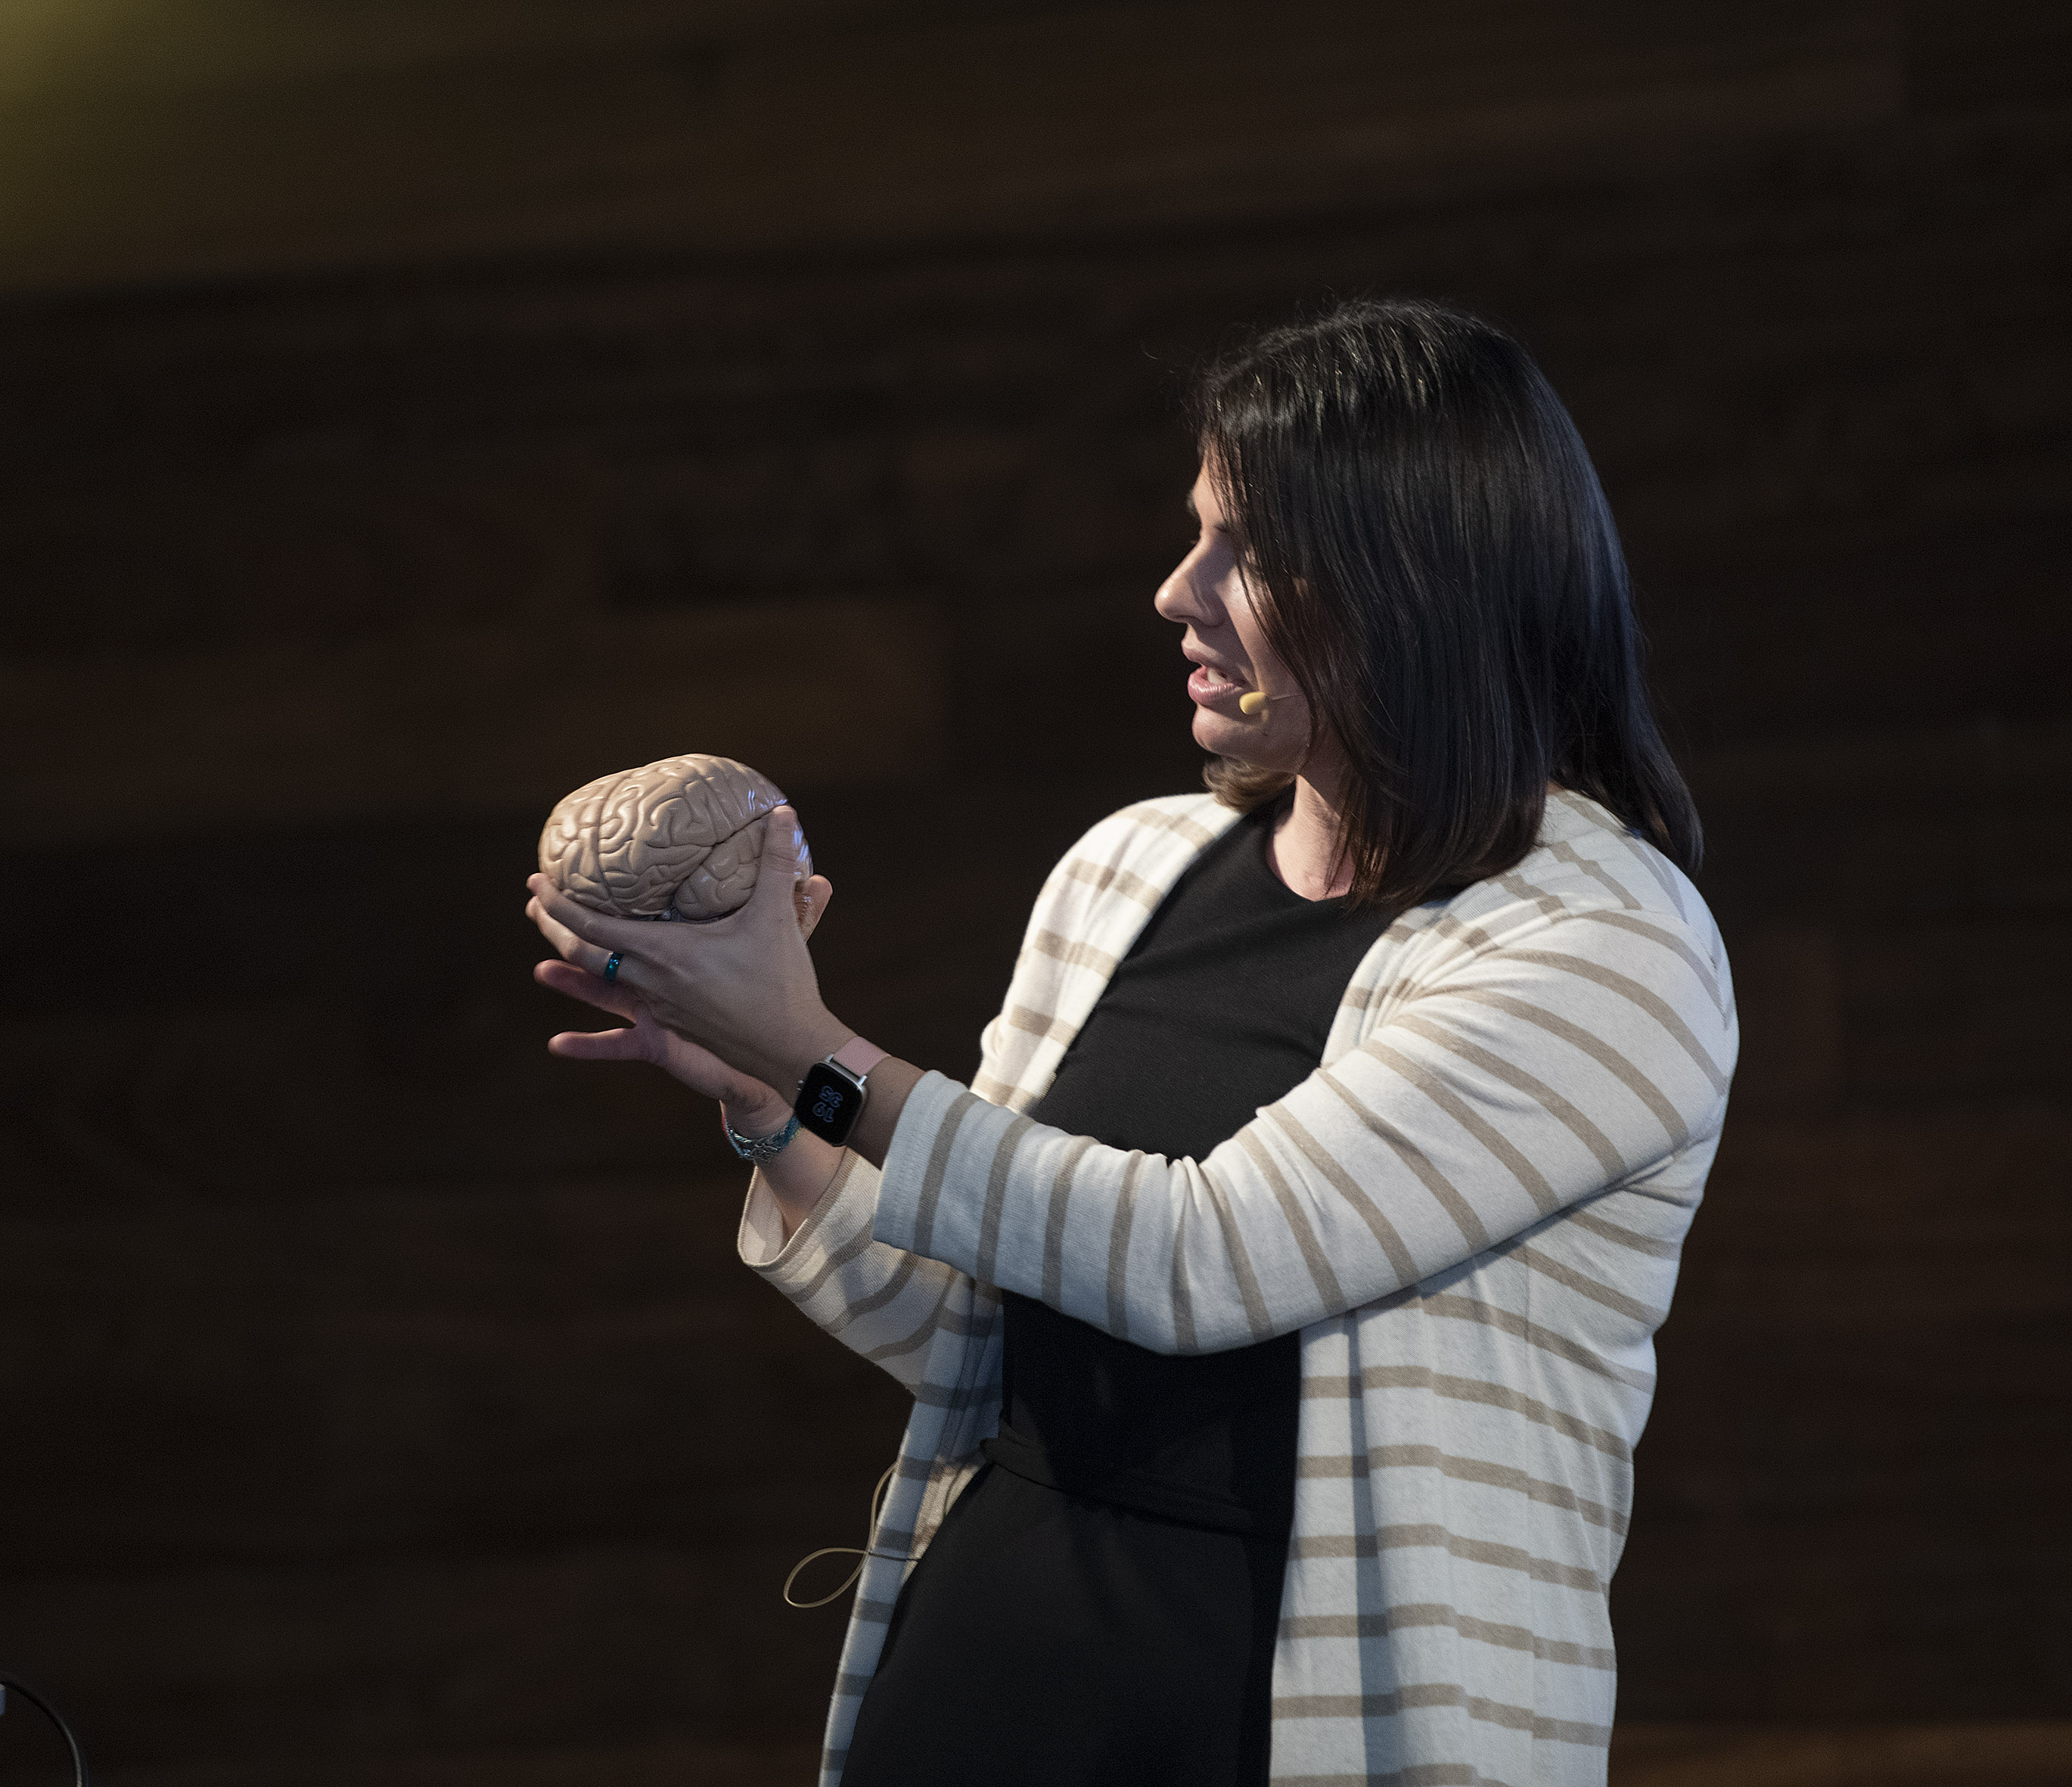 Un análisis del cerebro humano desde la Neurociencia y Evolución